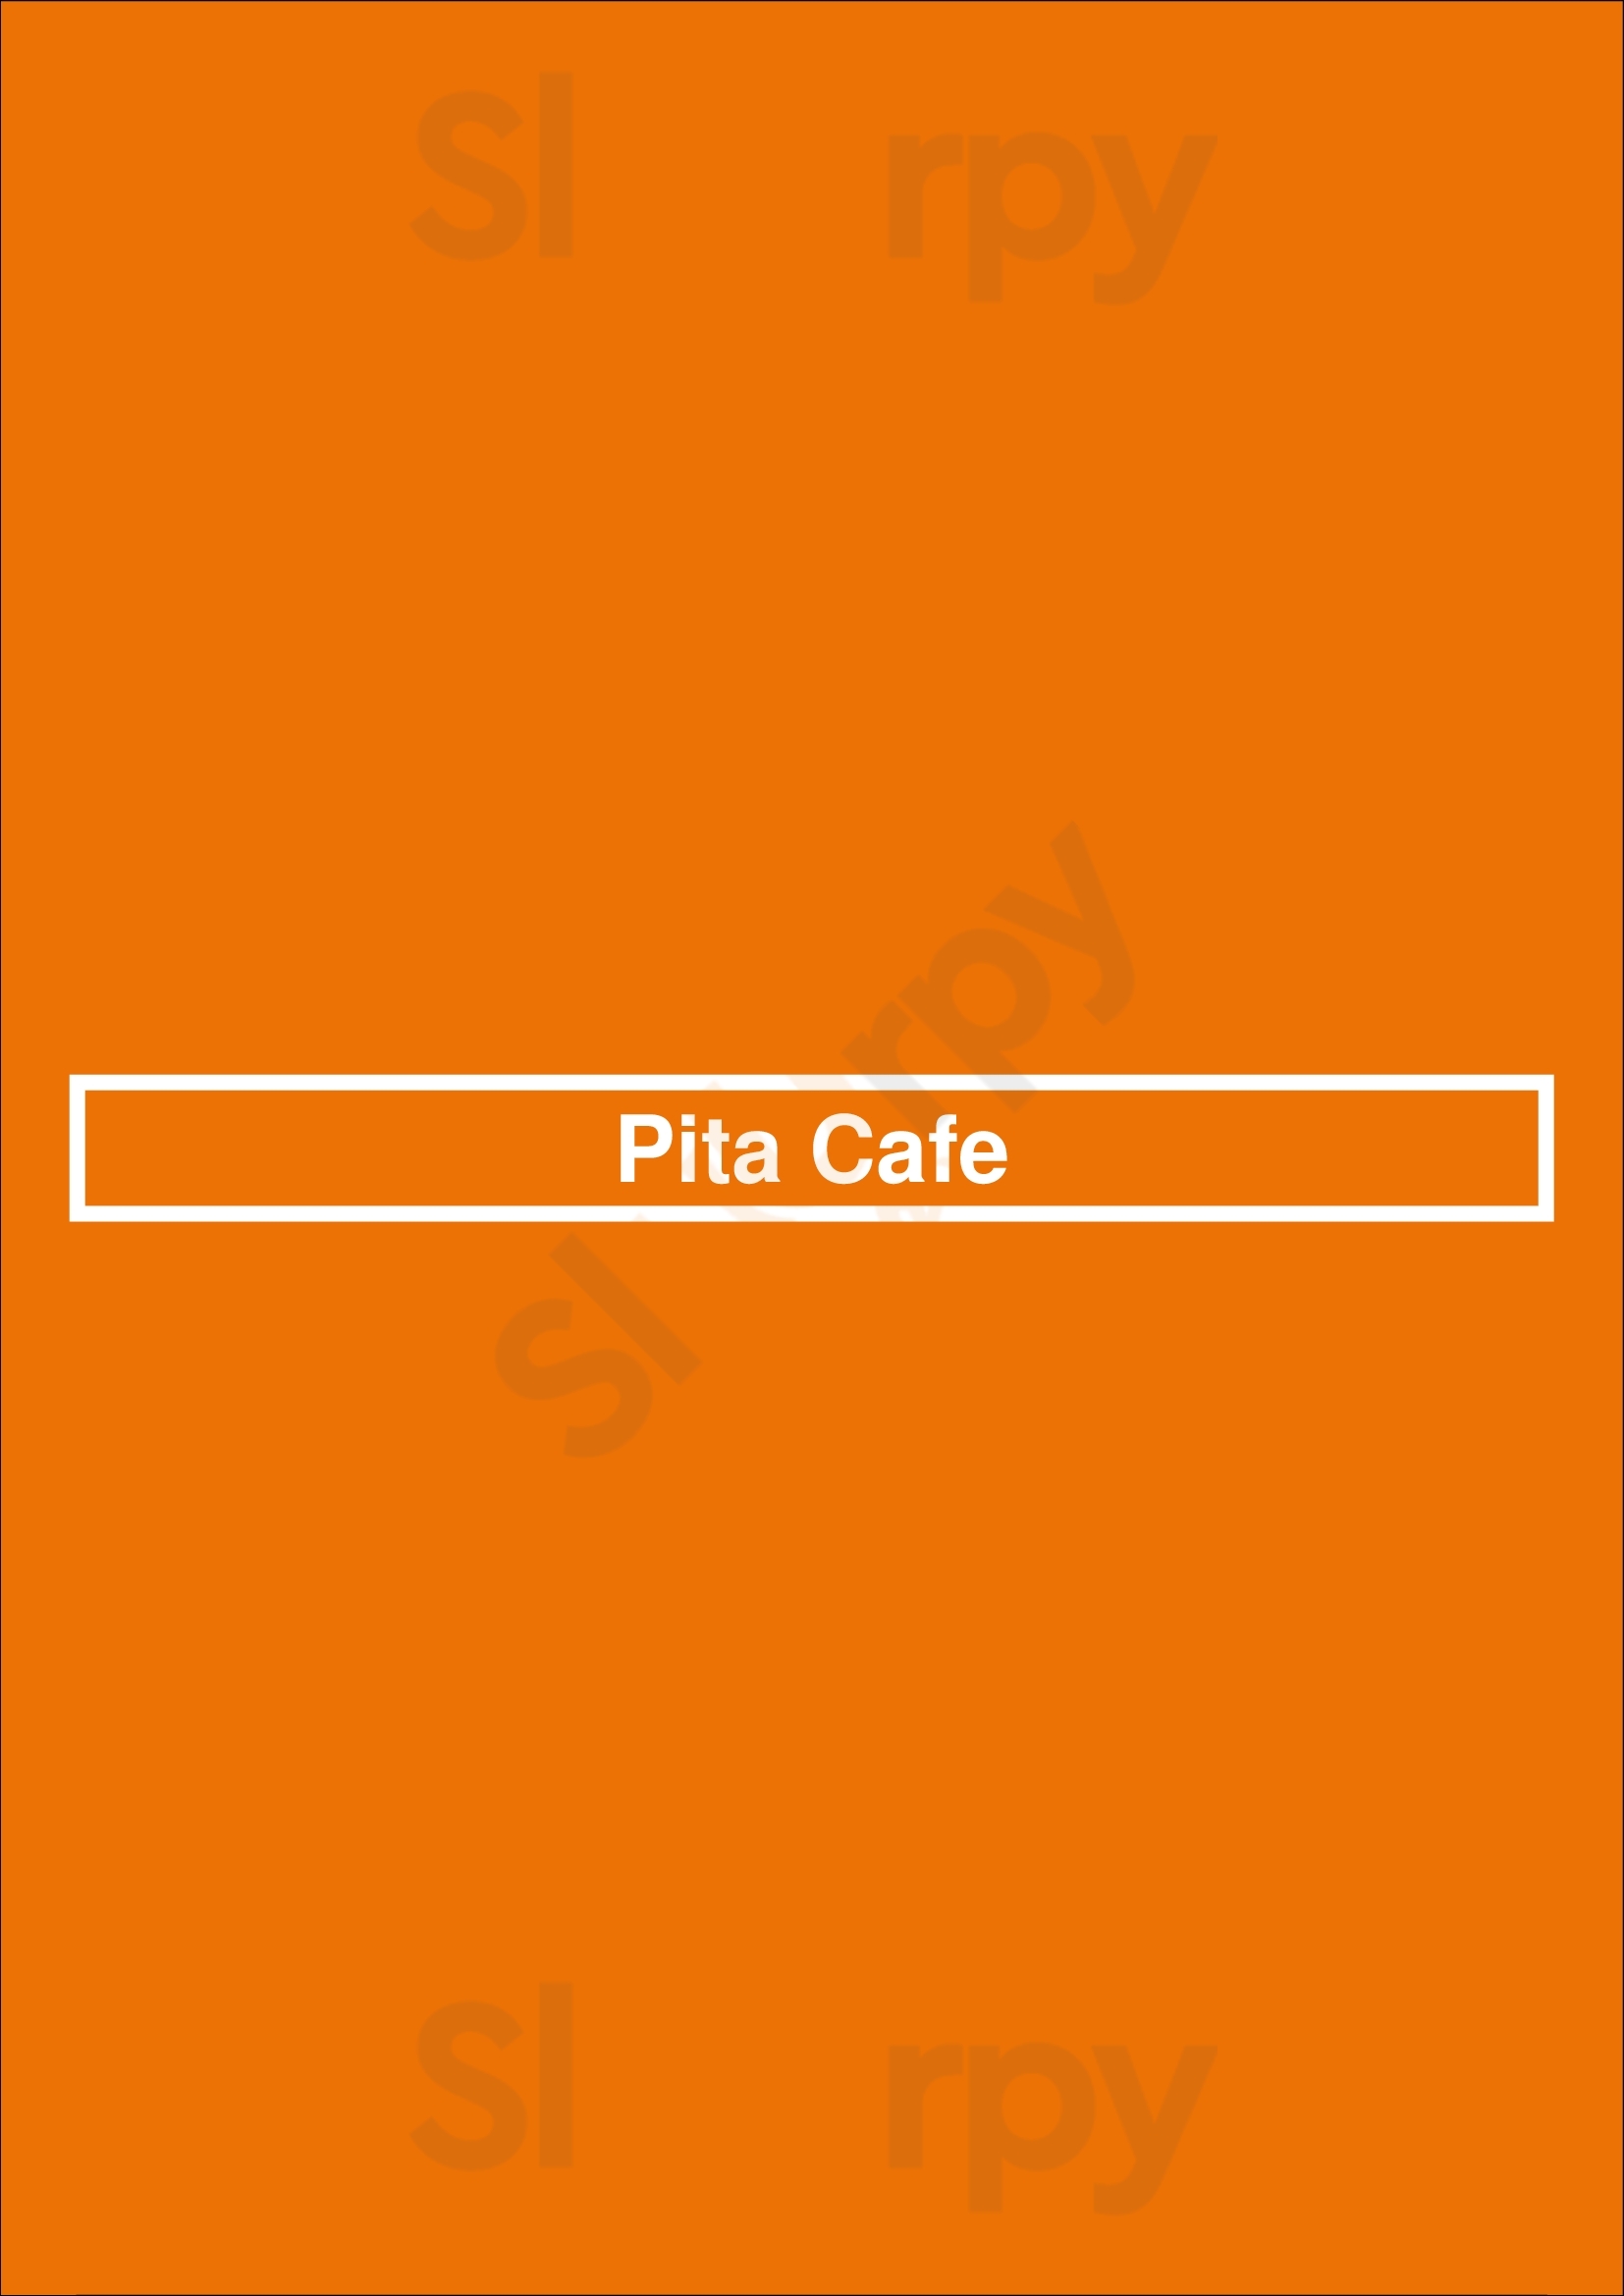 Pita Cafe Mediterranean Grill Los Angeles Menu - 1